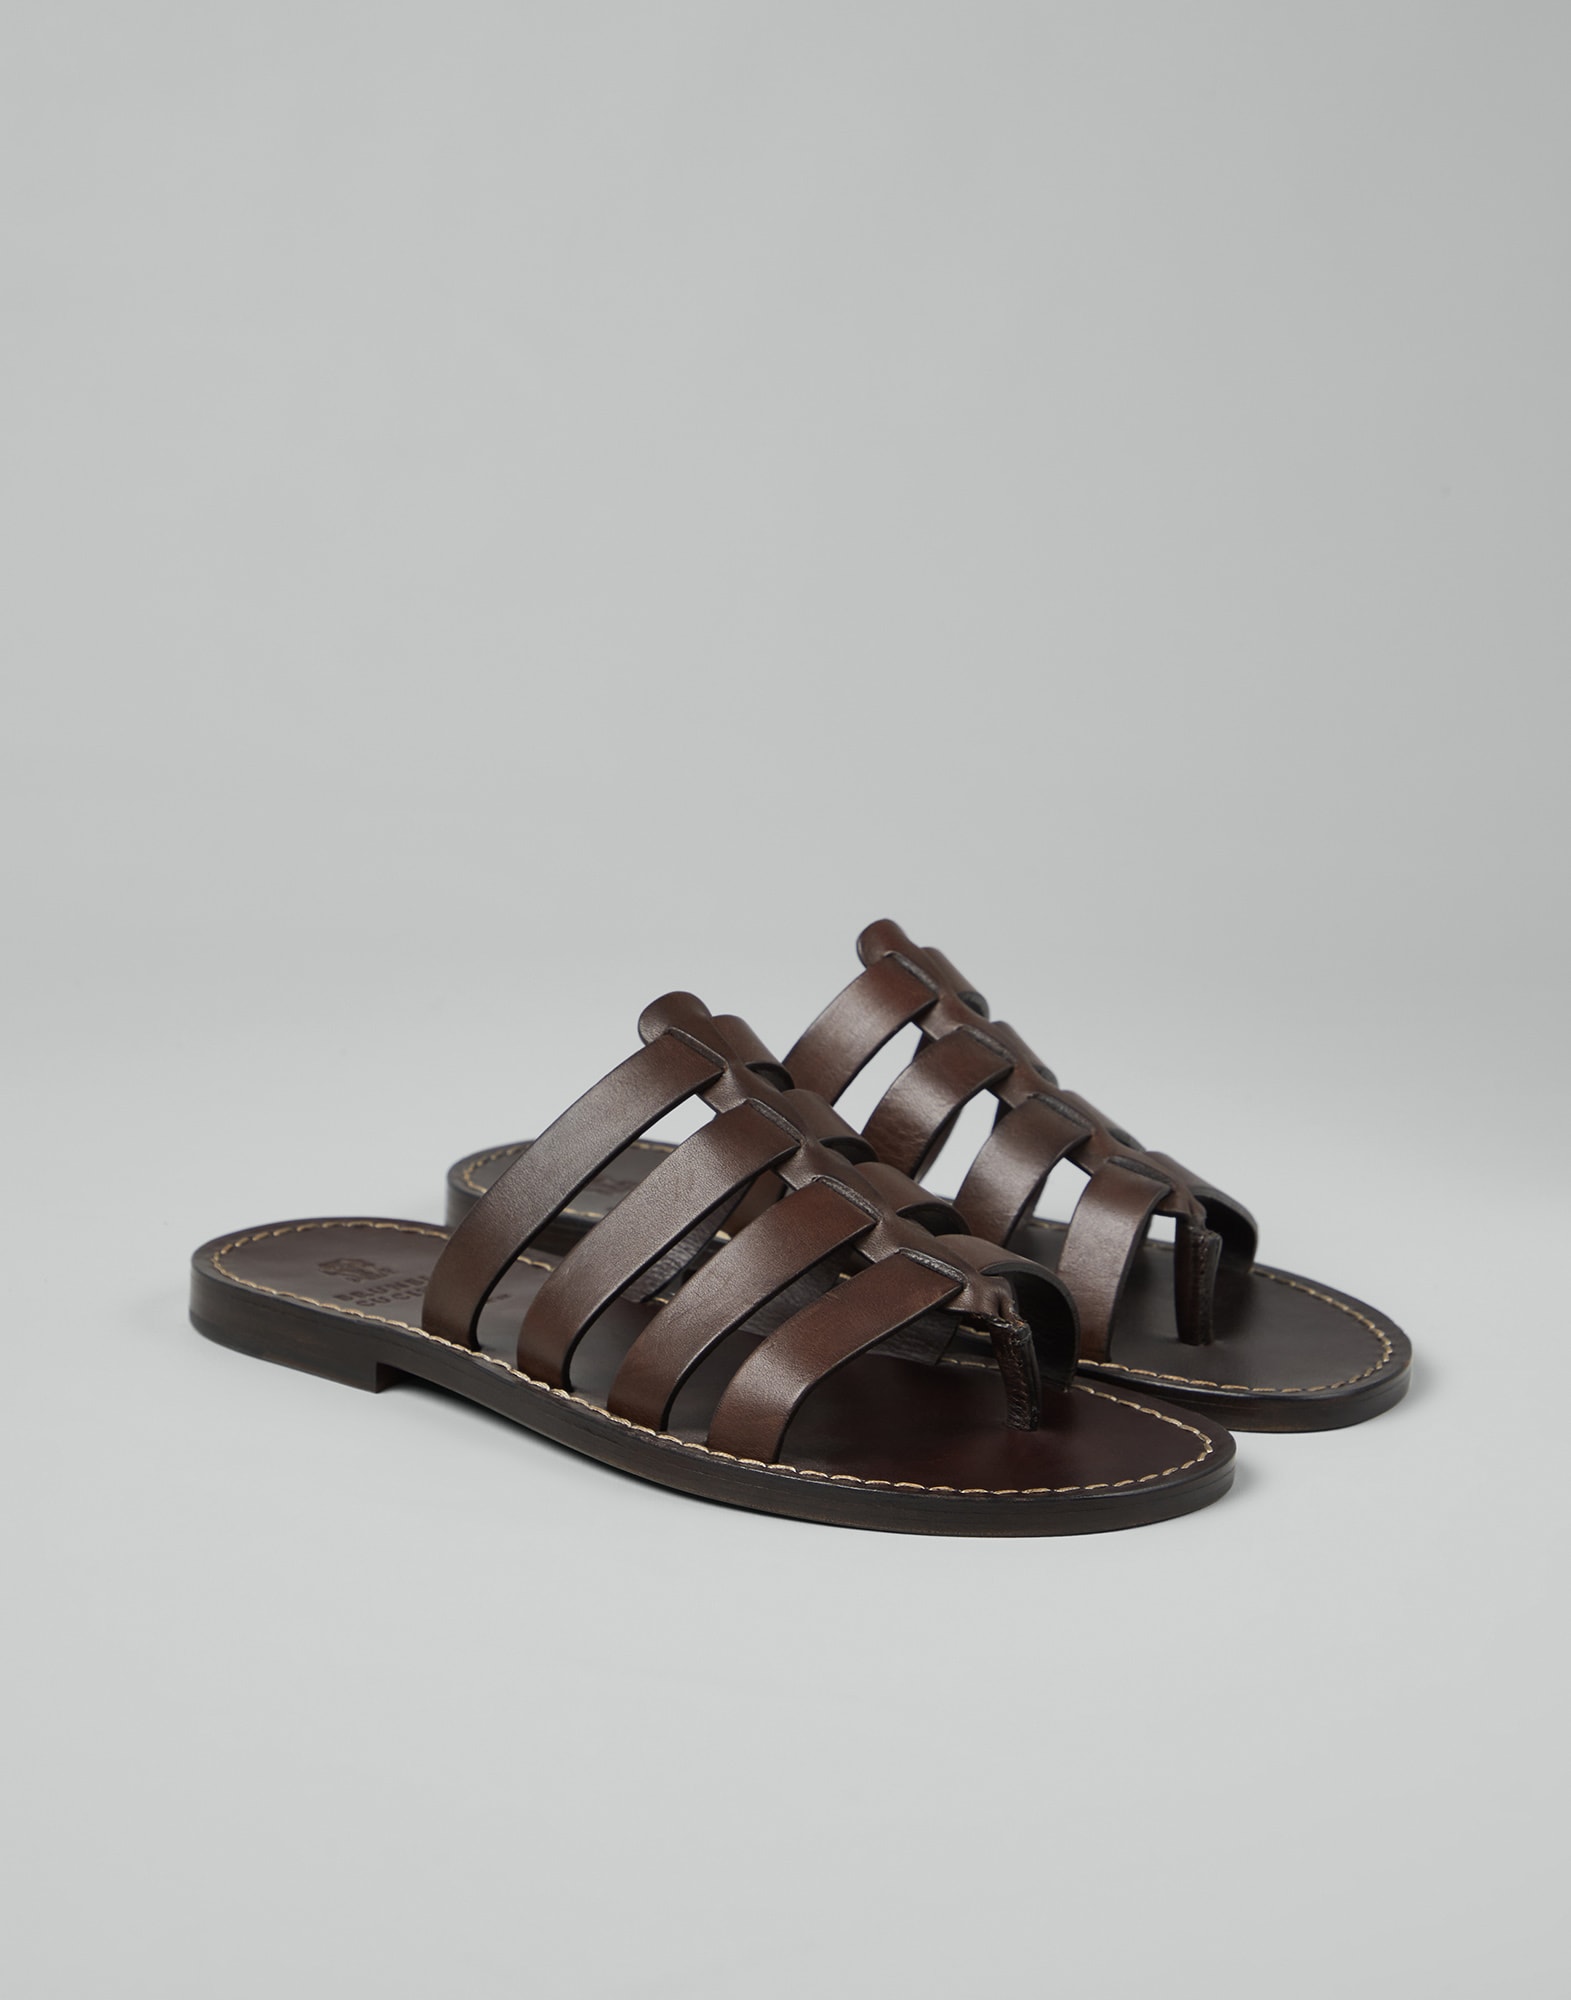 Calfskin sandals